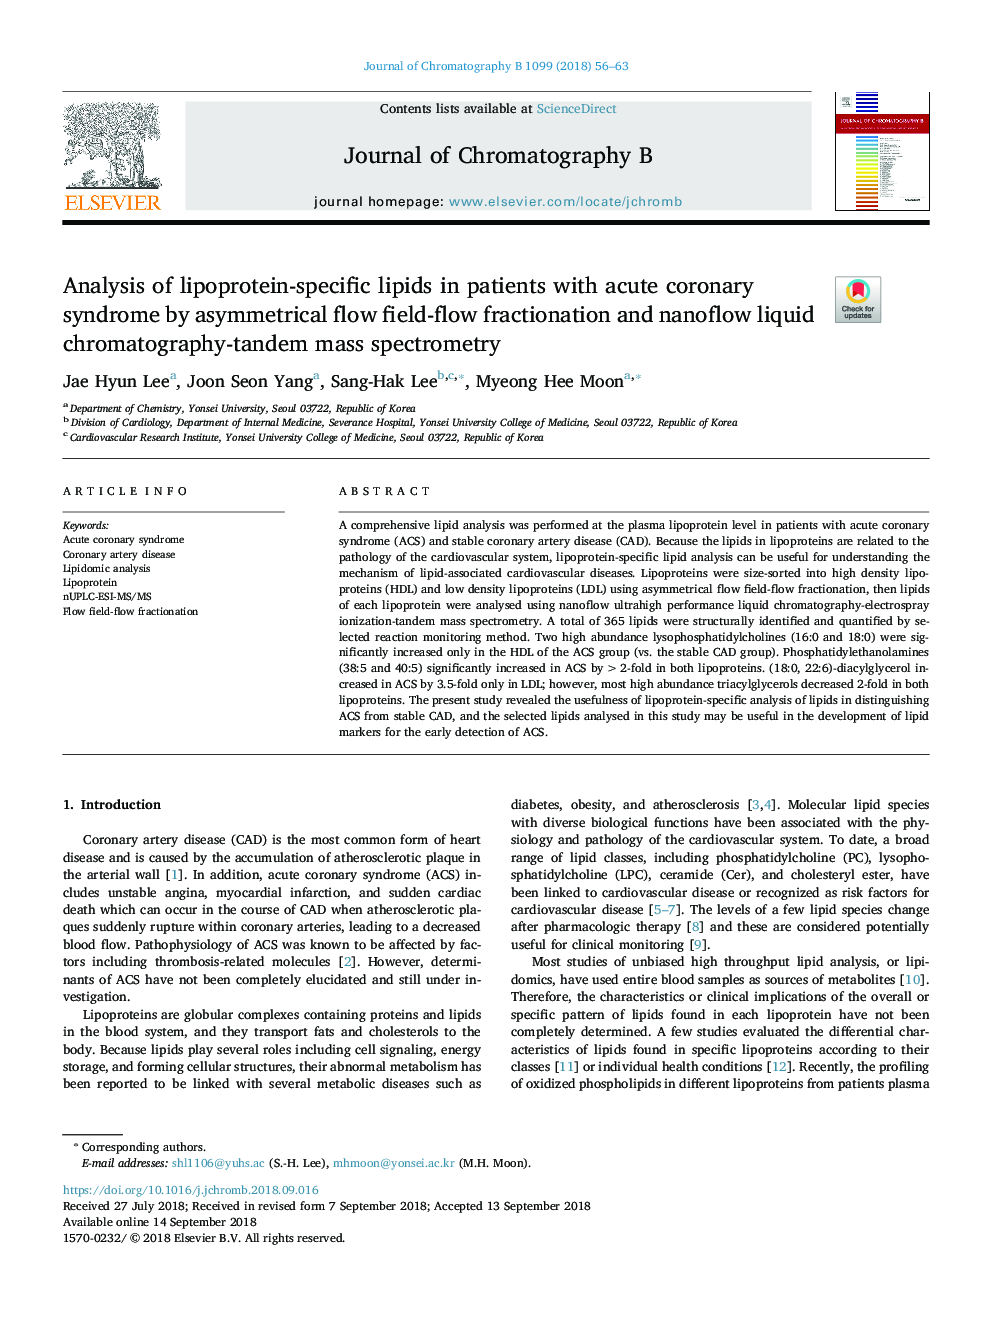 تجزیه و تحلیل لیپیدهای اختصاصی لیپوپروتئین در بیماران مبتلا به سندرم حاد کرونری با استفاده از تقطیر میدان جریان جریان نامتقارن و طیف سنجی جرم کروماتوگرافی مایع نانو فلو